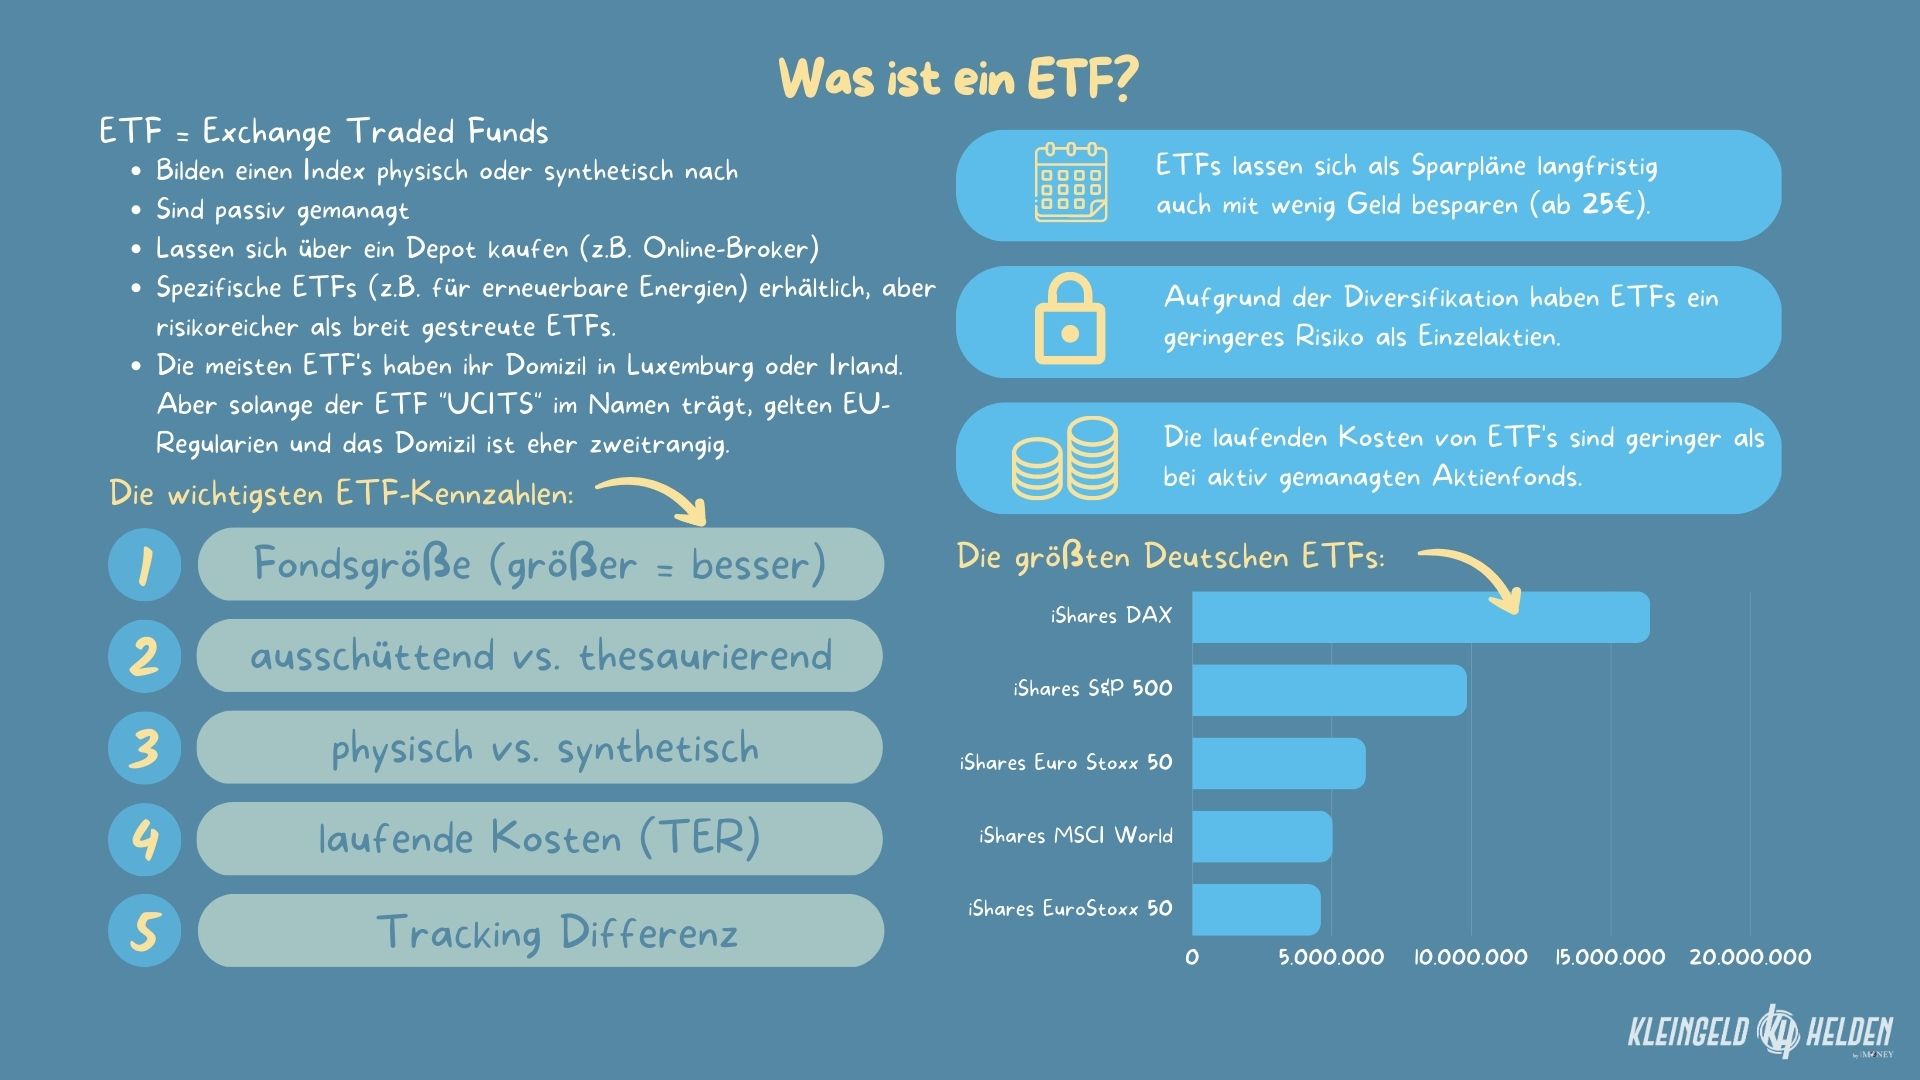 Infografik: Was ist ein ETF? | Die wichtigsten ETF Kennzahlen & die größten Deutschen ETFs